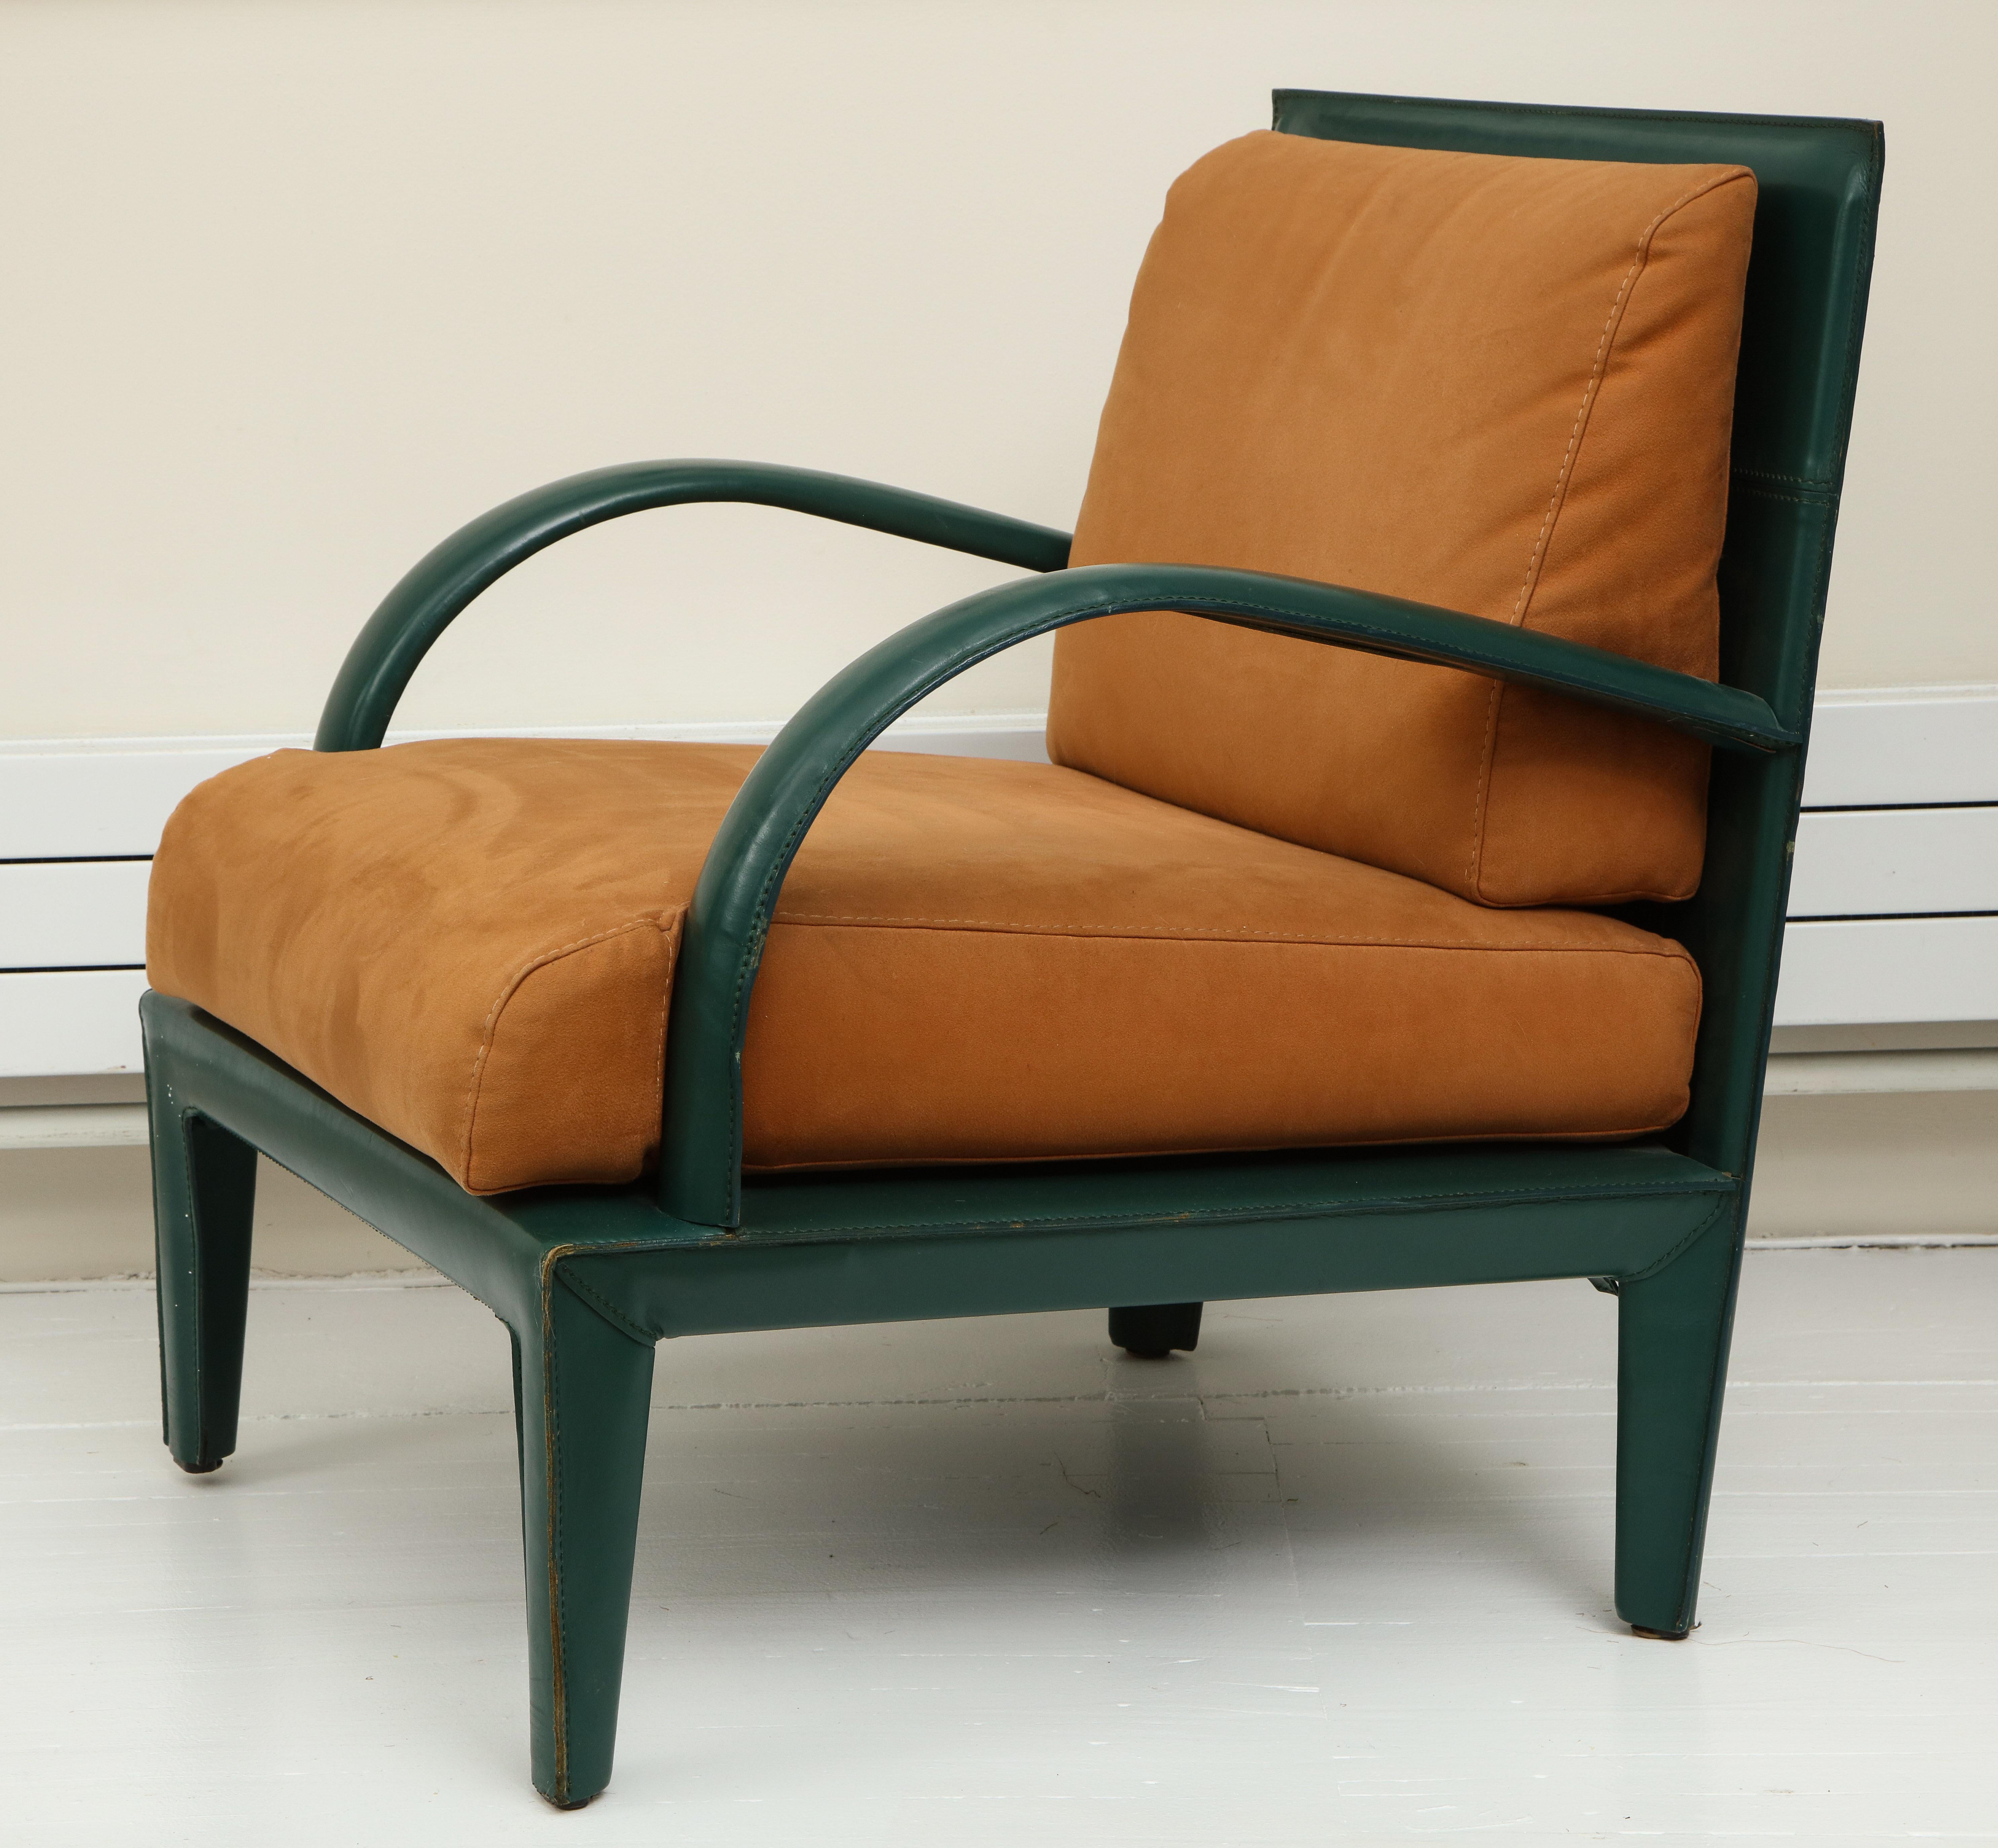 Fin du 20e siècle Chaises longues en cuir brun et vert, Stitch by Stitch, inspirées par Hermès, années 1980, France en vente